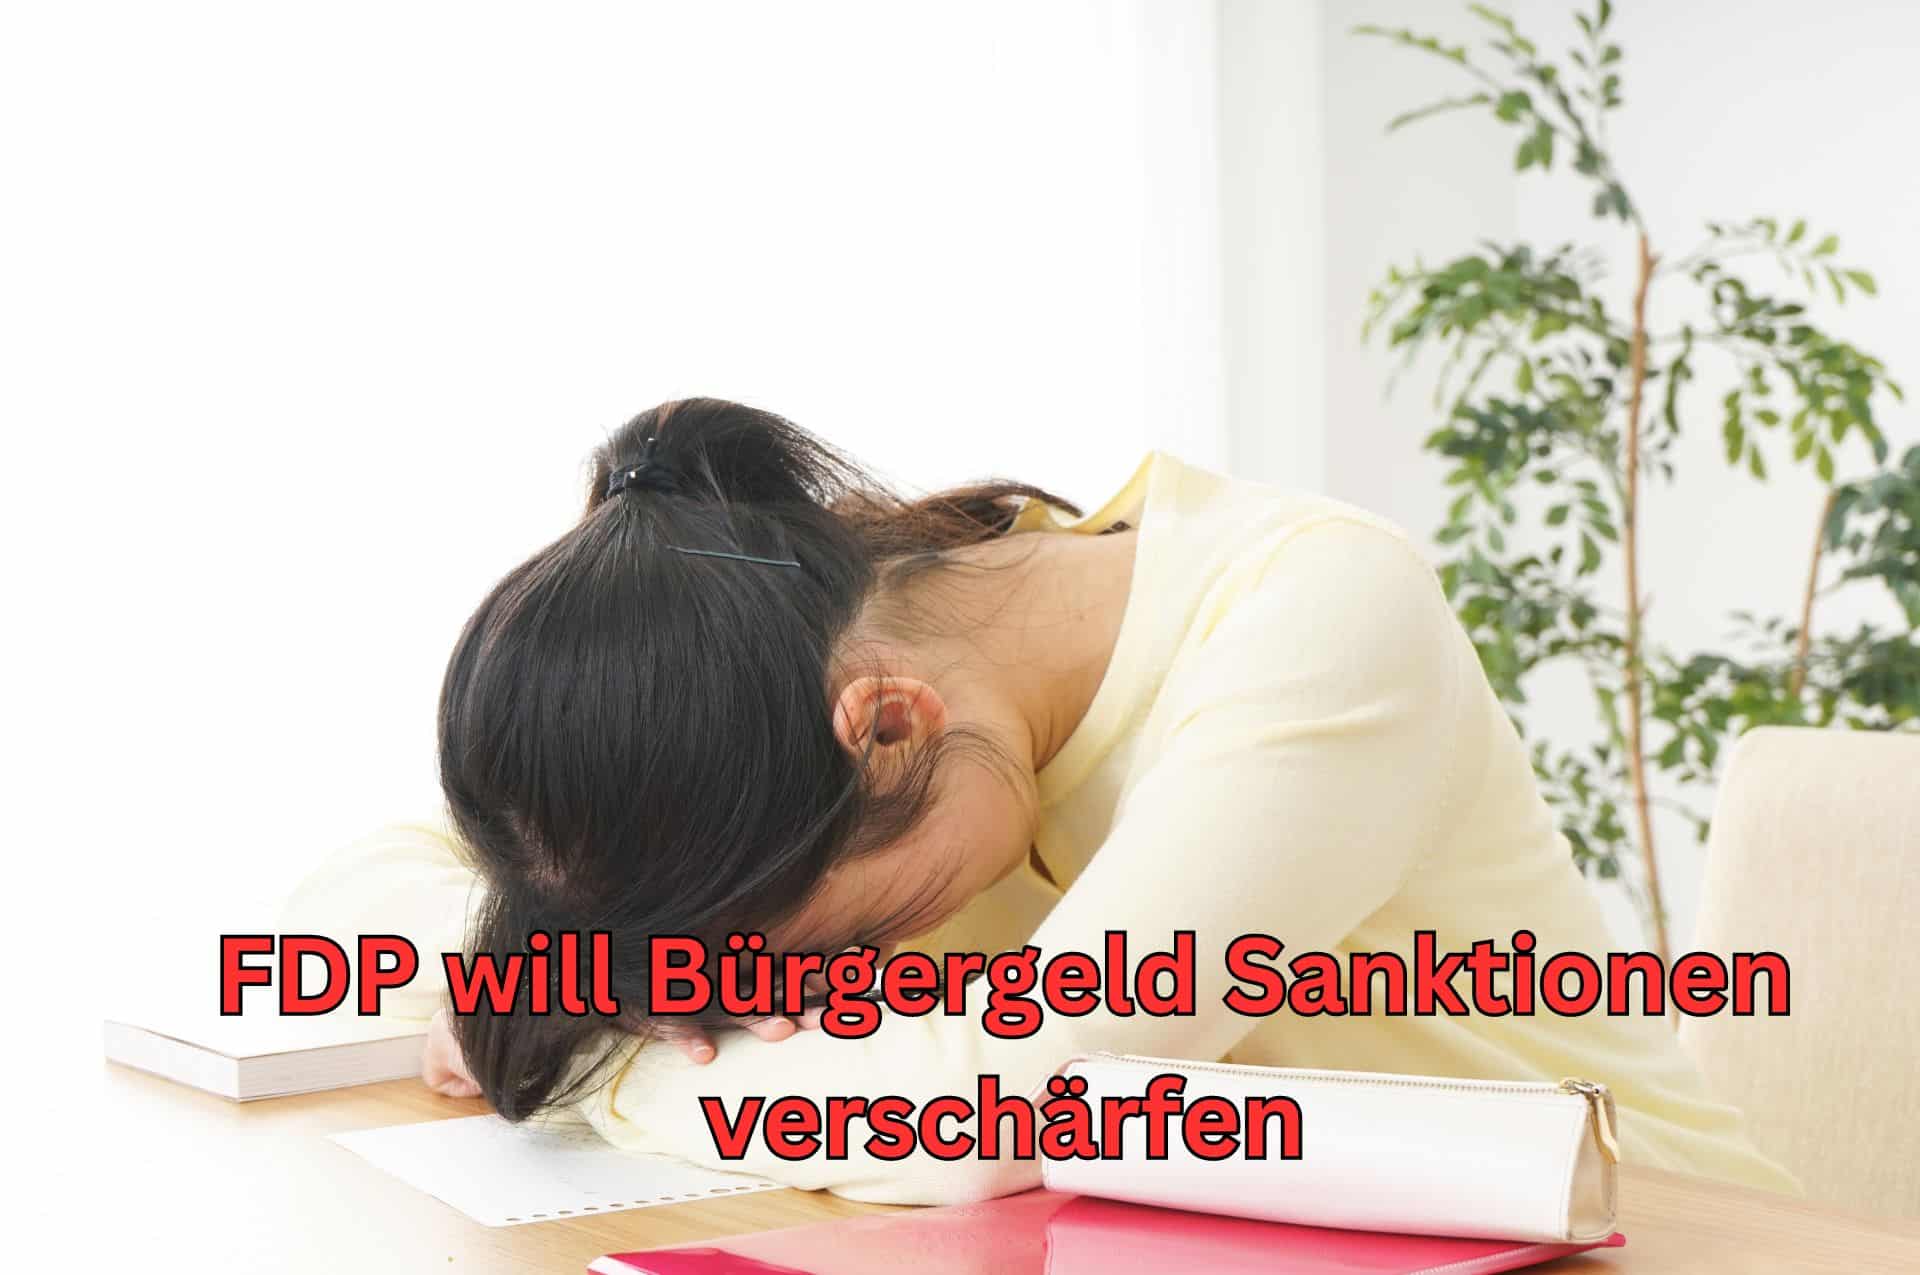 Nach den Vorstellungen der FDP sollen die Bürgergeld Sanktionen drastisch verschärft werden.